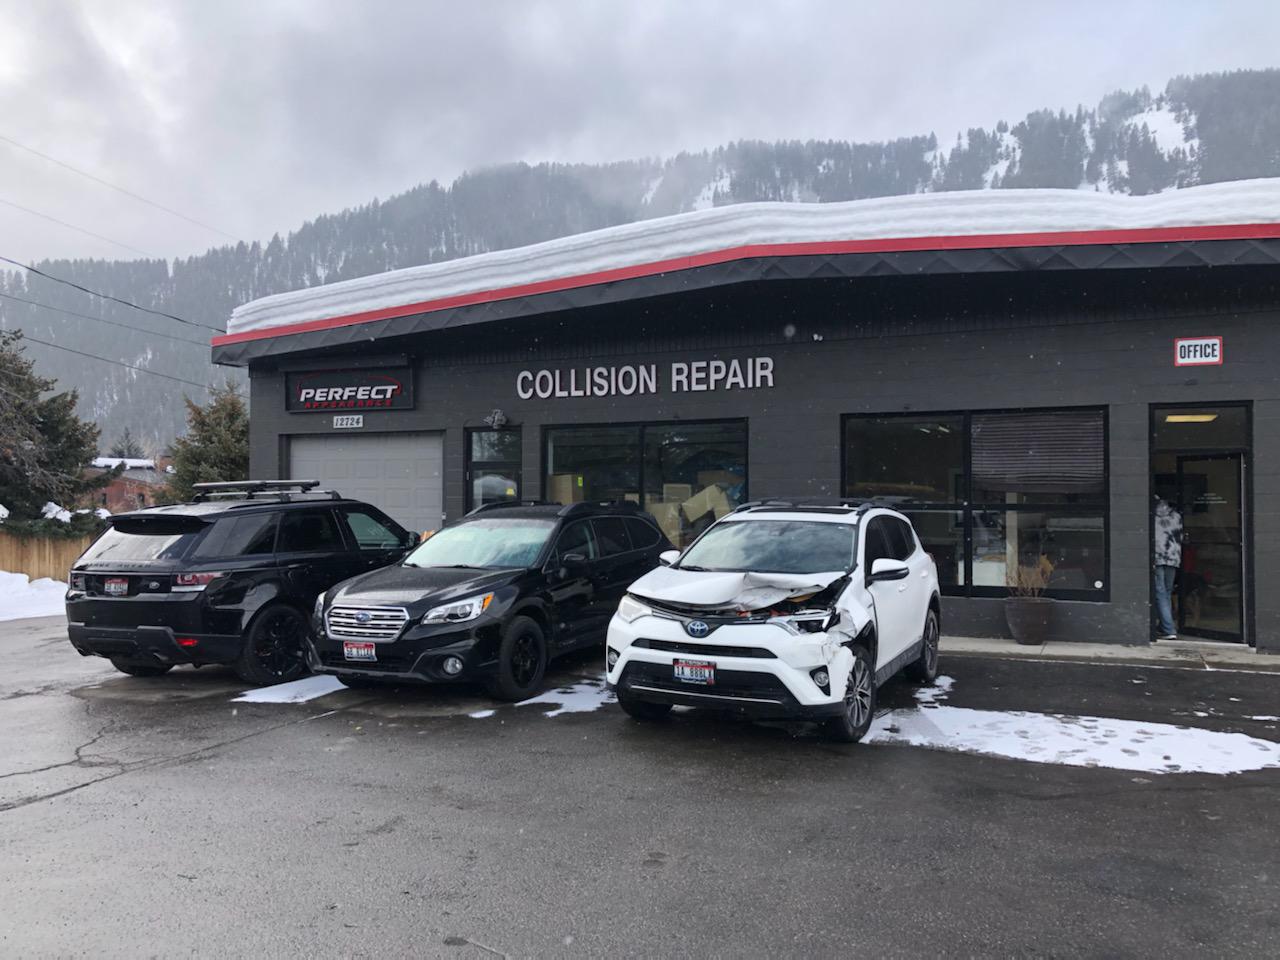 The Best Local Auto Repair & Collision Center!